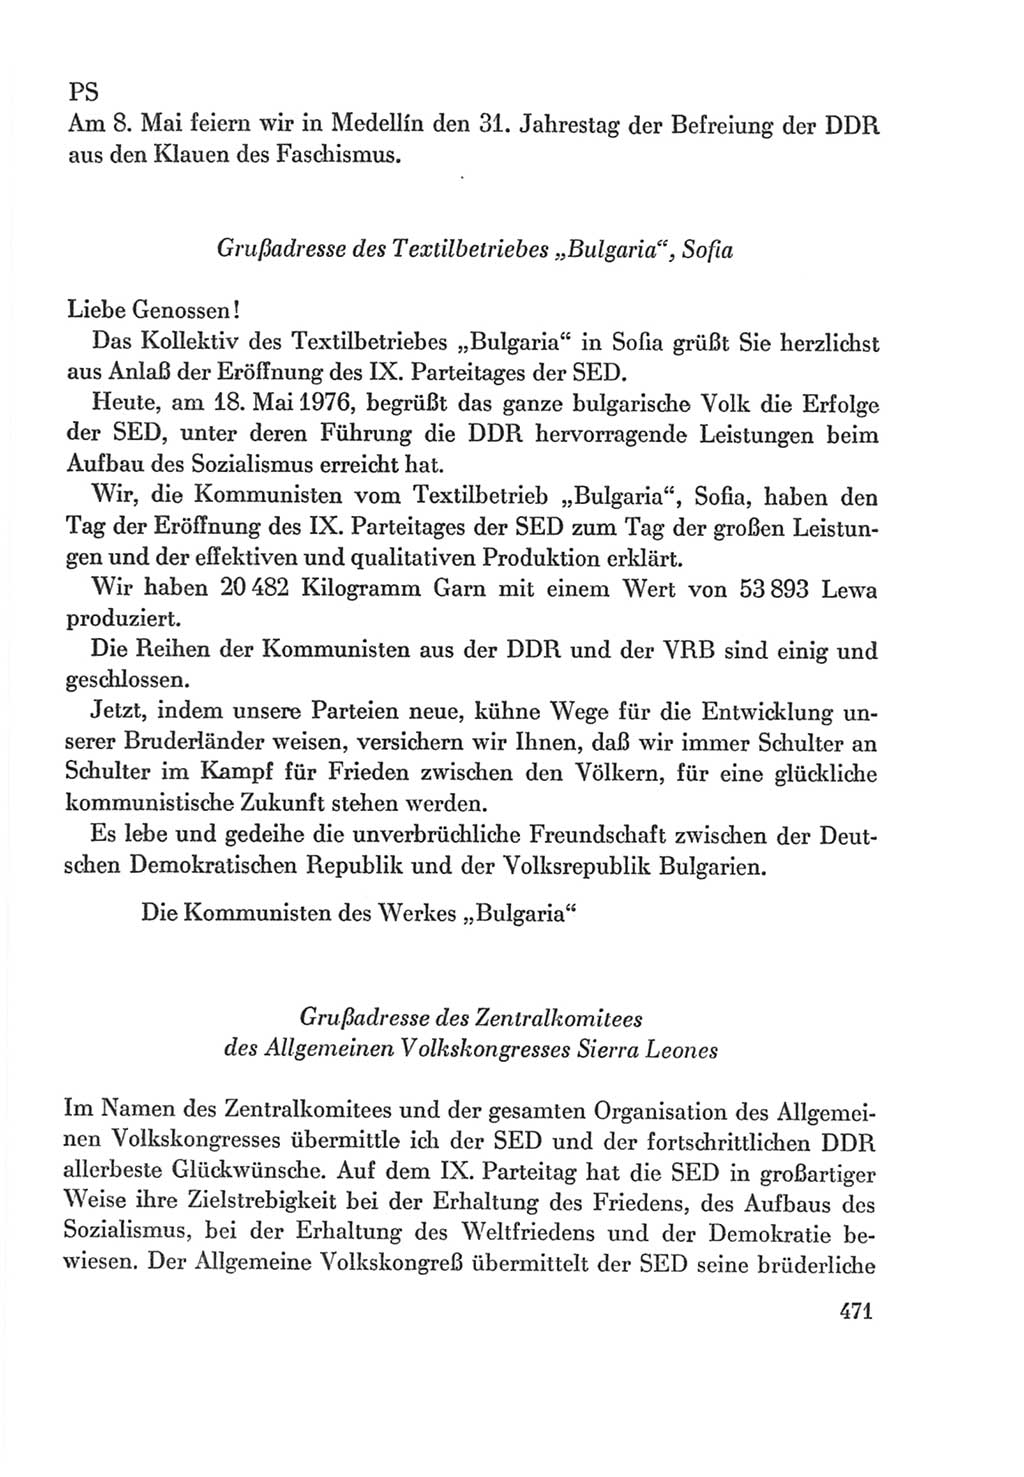 Protokoll der Verhandlungen des Ⅸ. Parteitages der Sozialistischen Einheitspartei Deutschlands (SED) [Deutsche Demokratische Republik (DDR)] 1976, Band 2, Seite 471 (Prot. Verh. Ⅸ. PT SED DDR 1976, Bd. 2, S. 471)